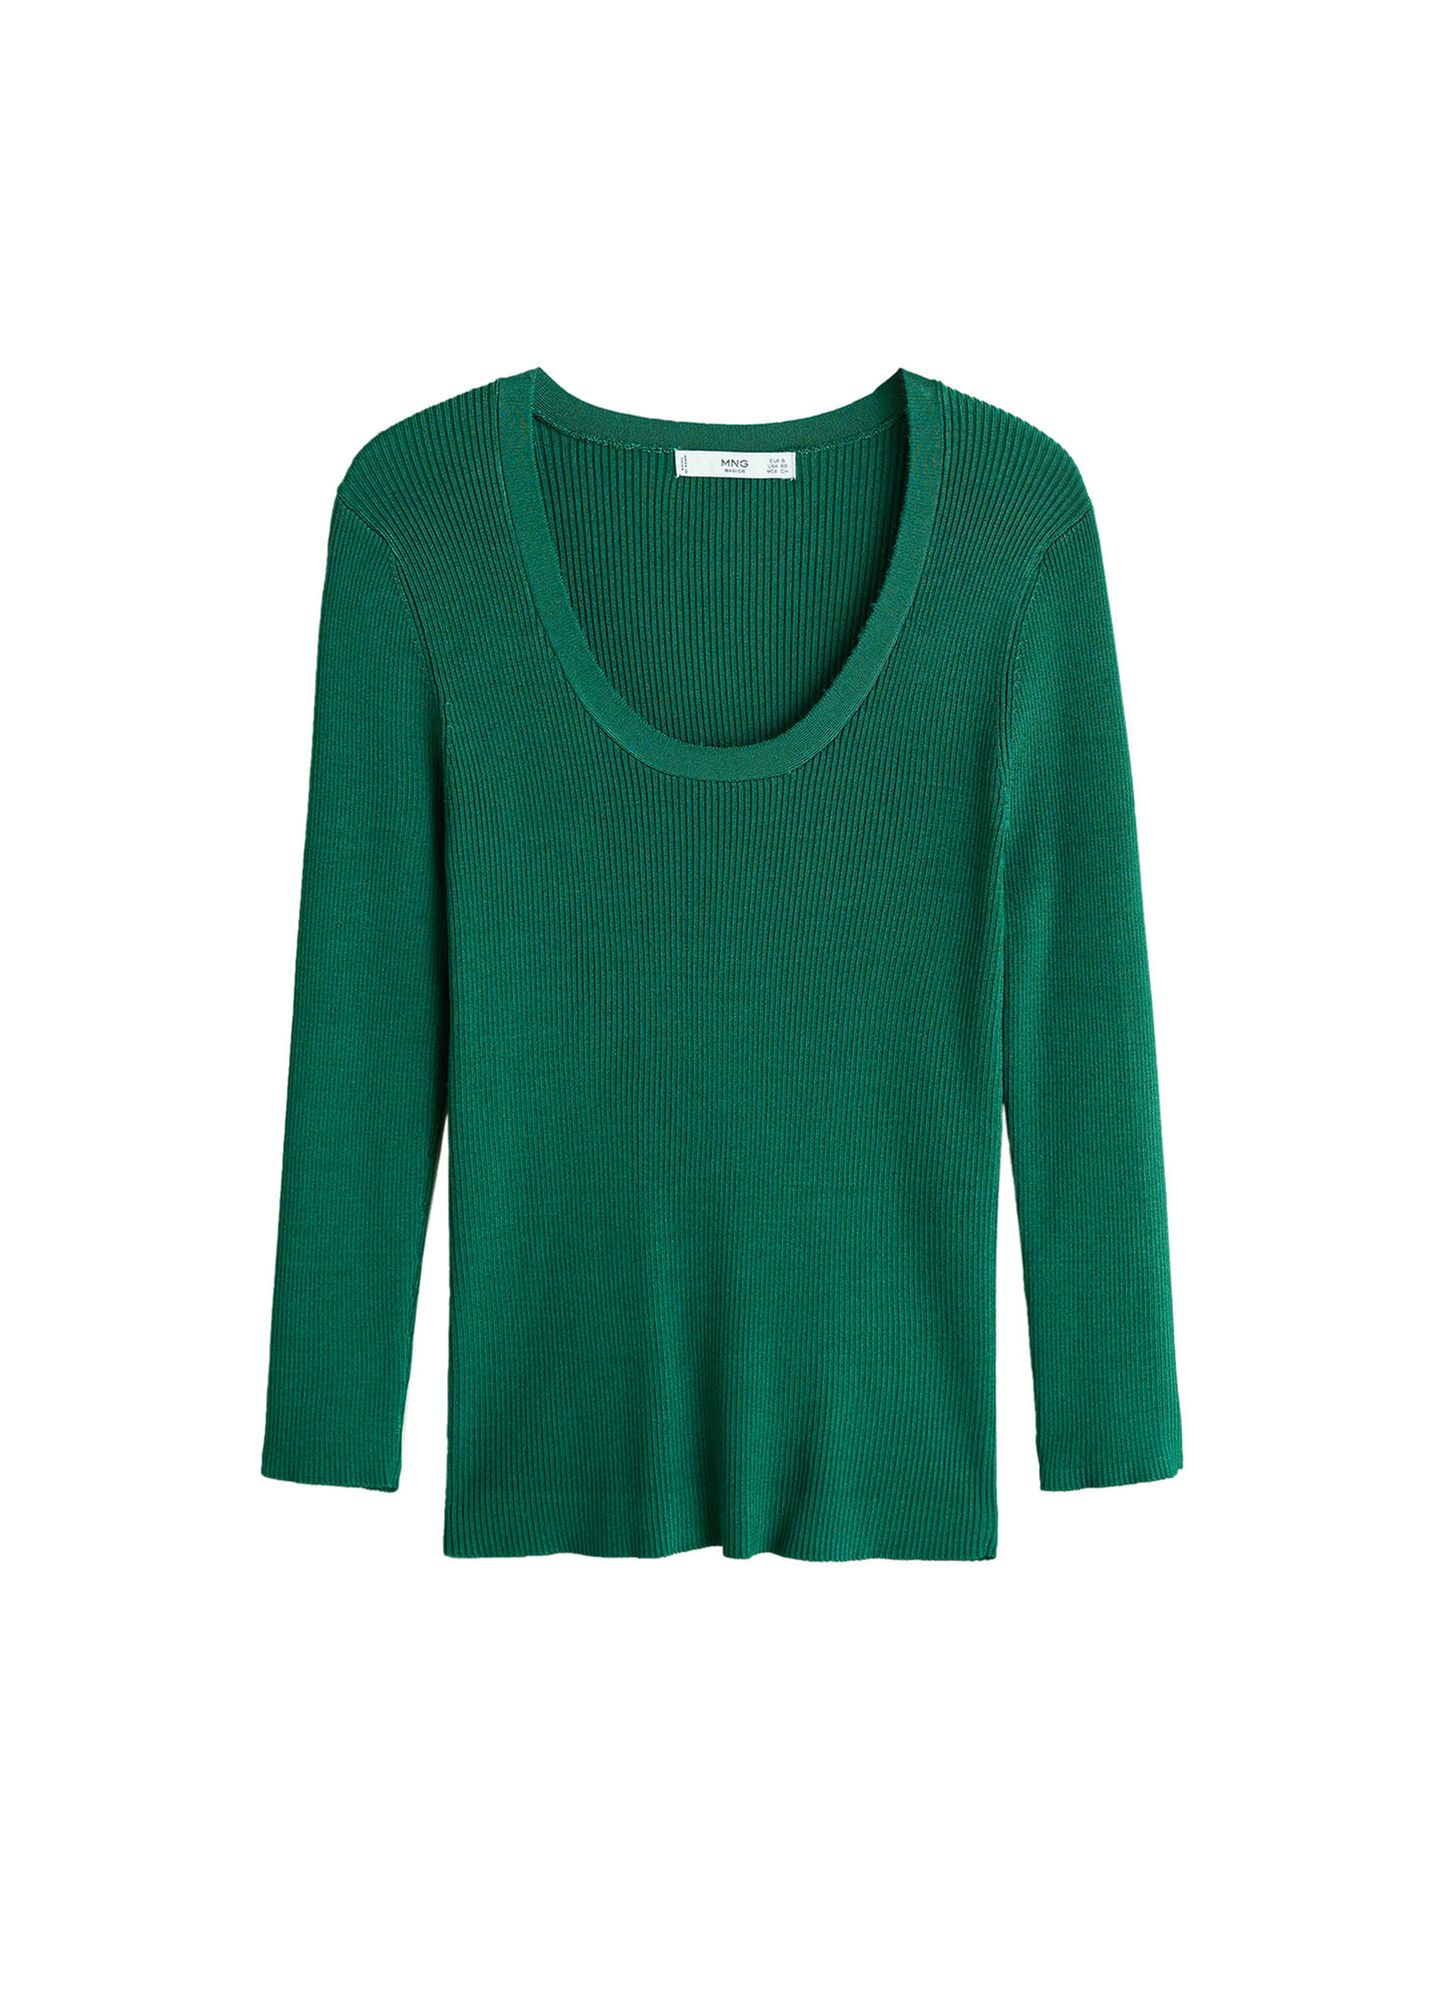 Royals, die günstige Kleidung tragen: grüner Mango Sweater